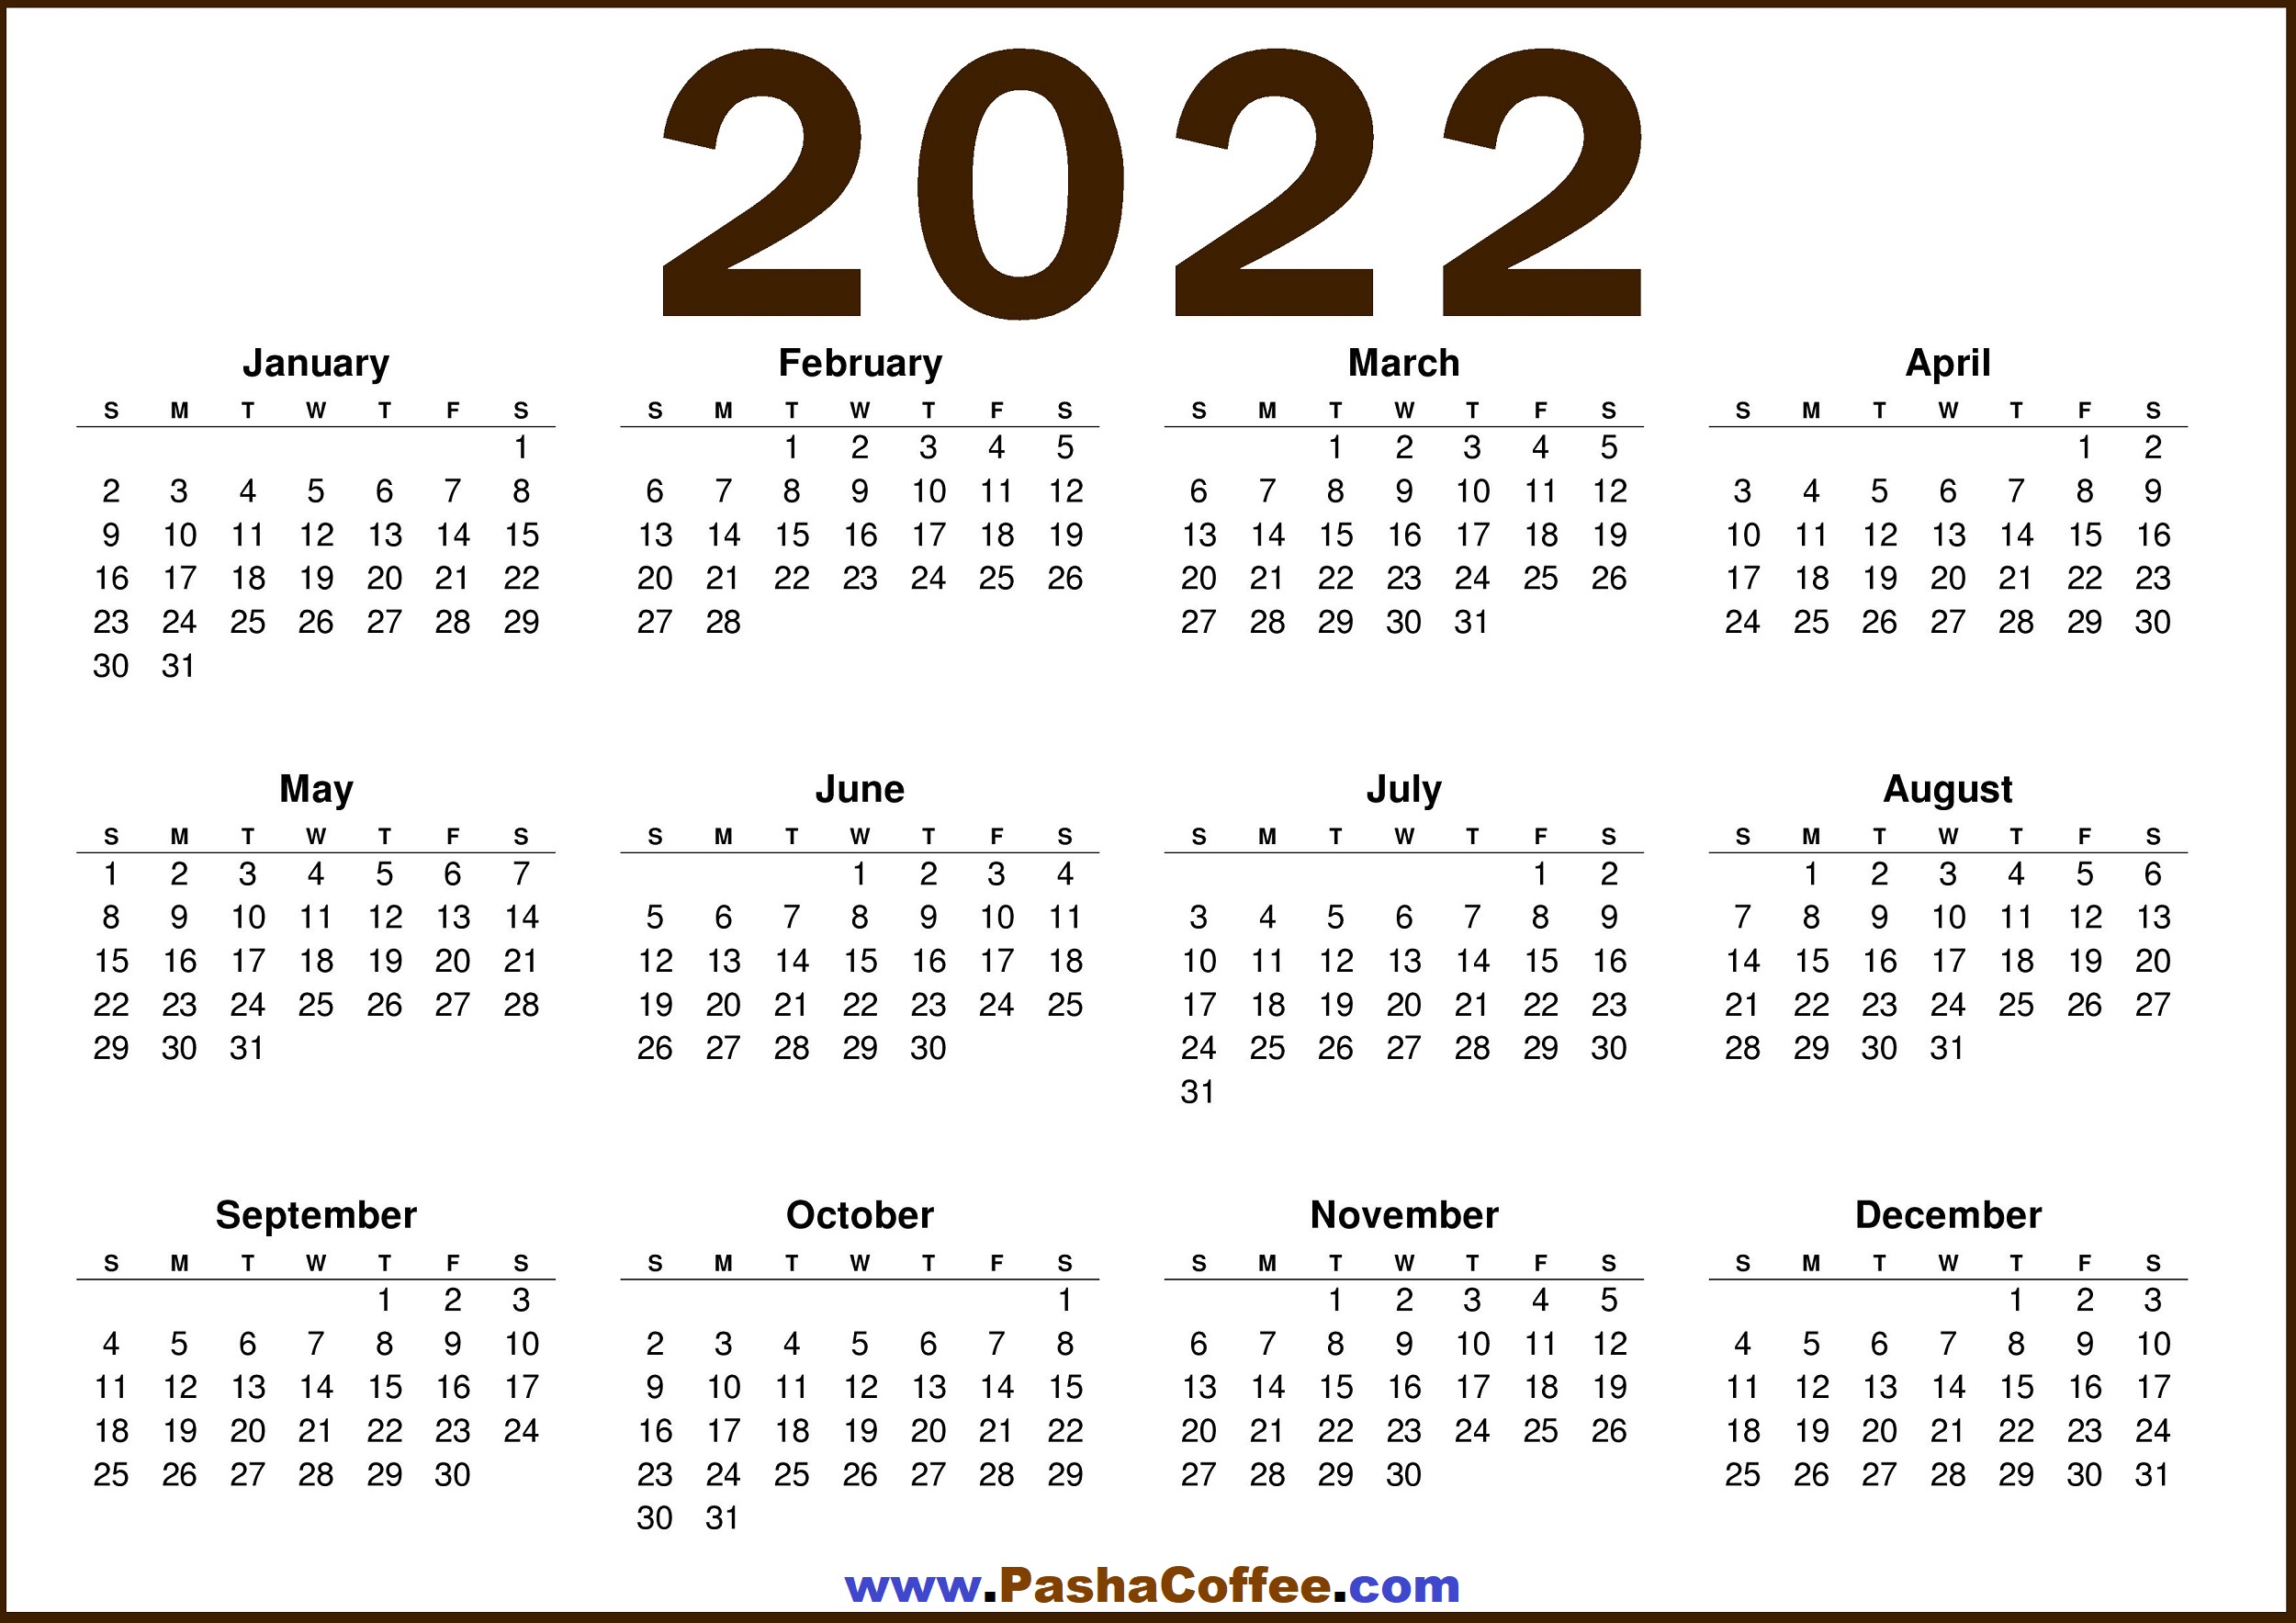 Free Download Calendar 2022 2022 Calendar Us – Free Printable 2022 Calendar – Pashacoffee.com